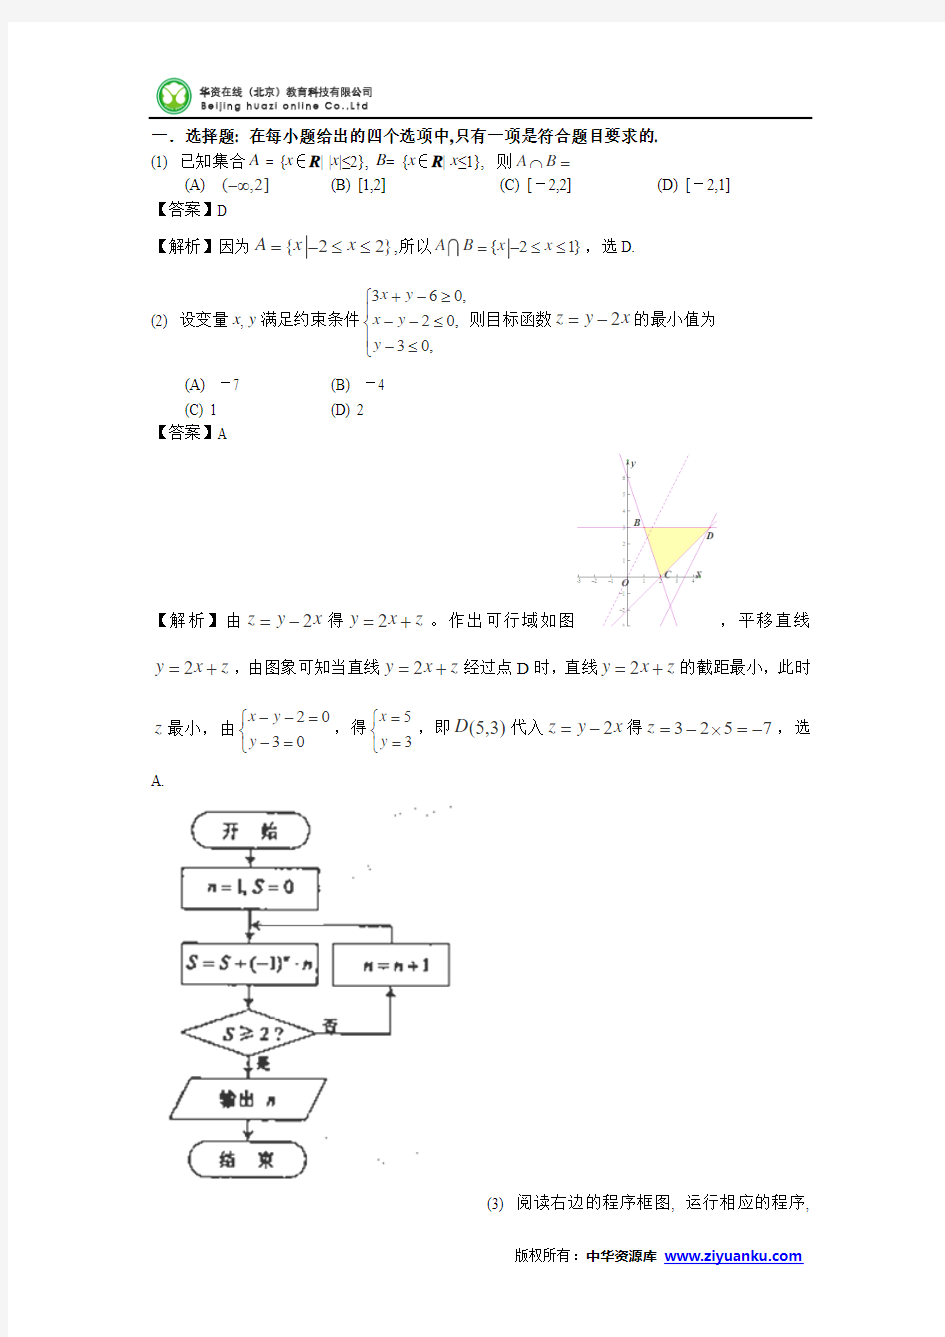 2013年高考真题——文科数学(天津卷)解析版 Word版含答案